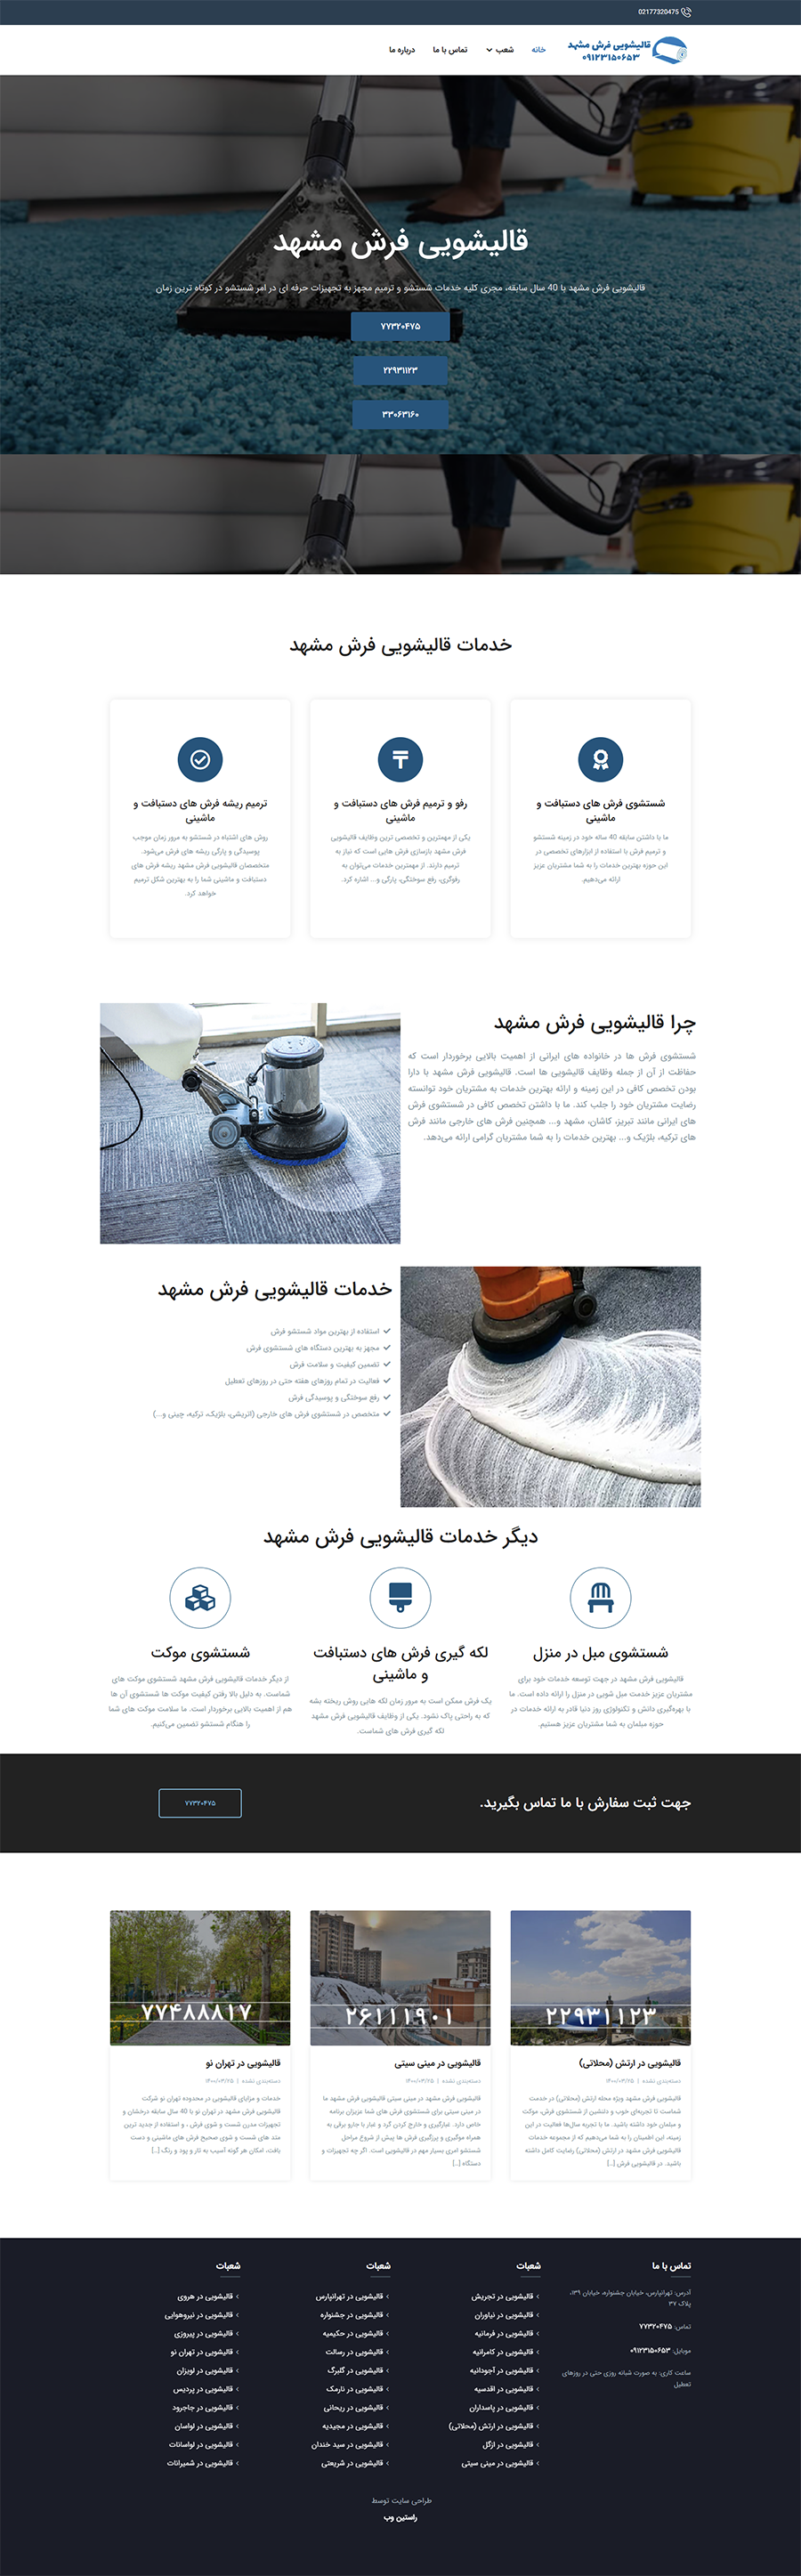 طراحی سایت قالیشویی فرش مشهد